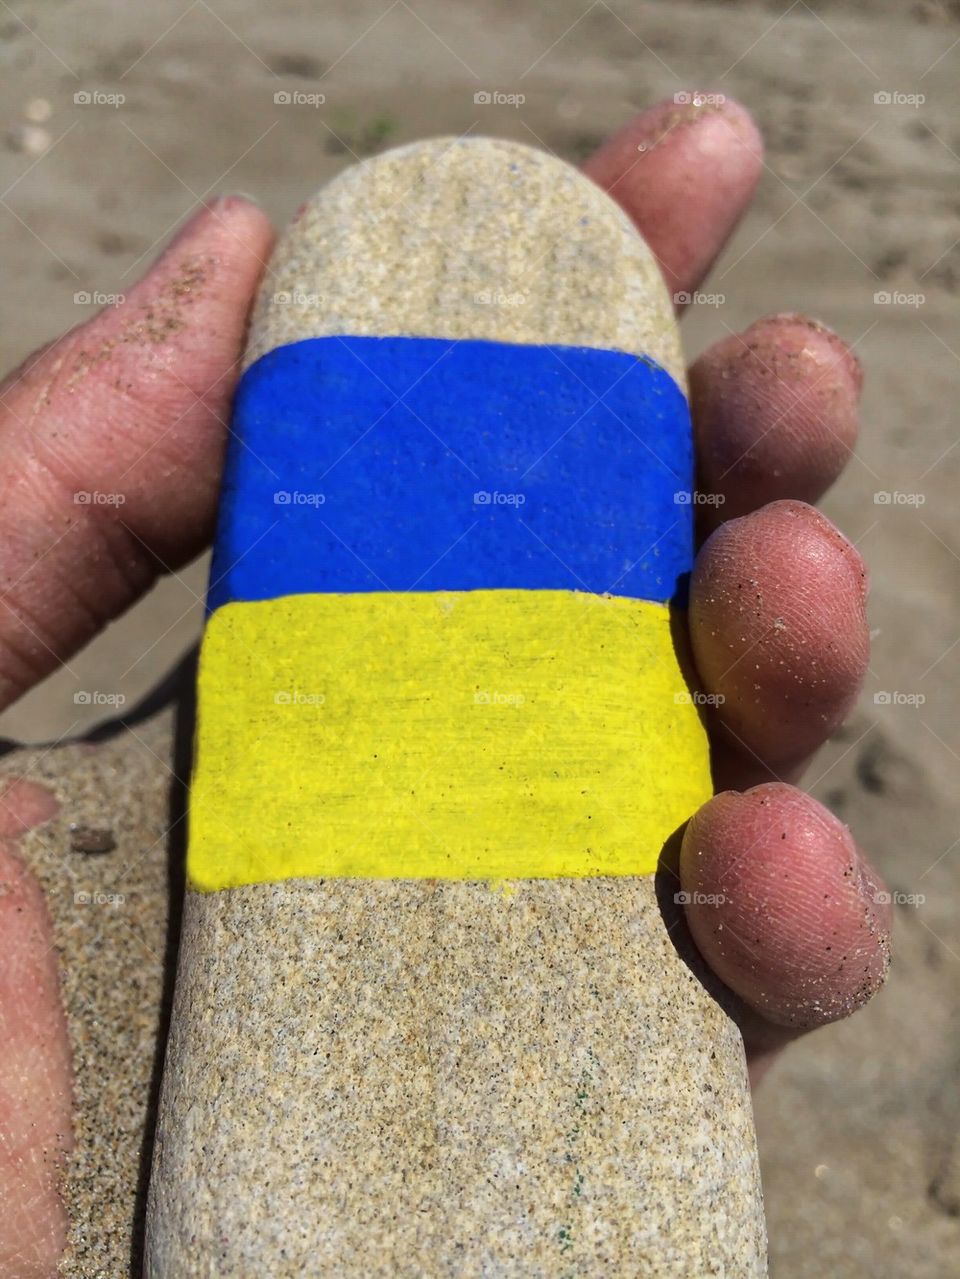 Ukraine's flag on a palm hand